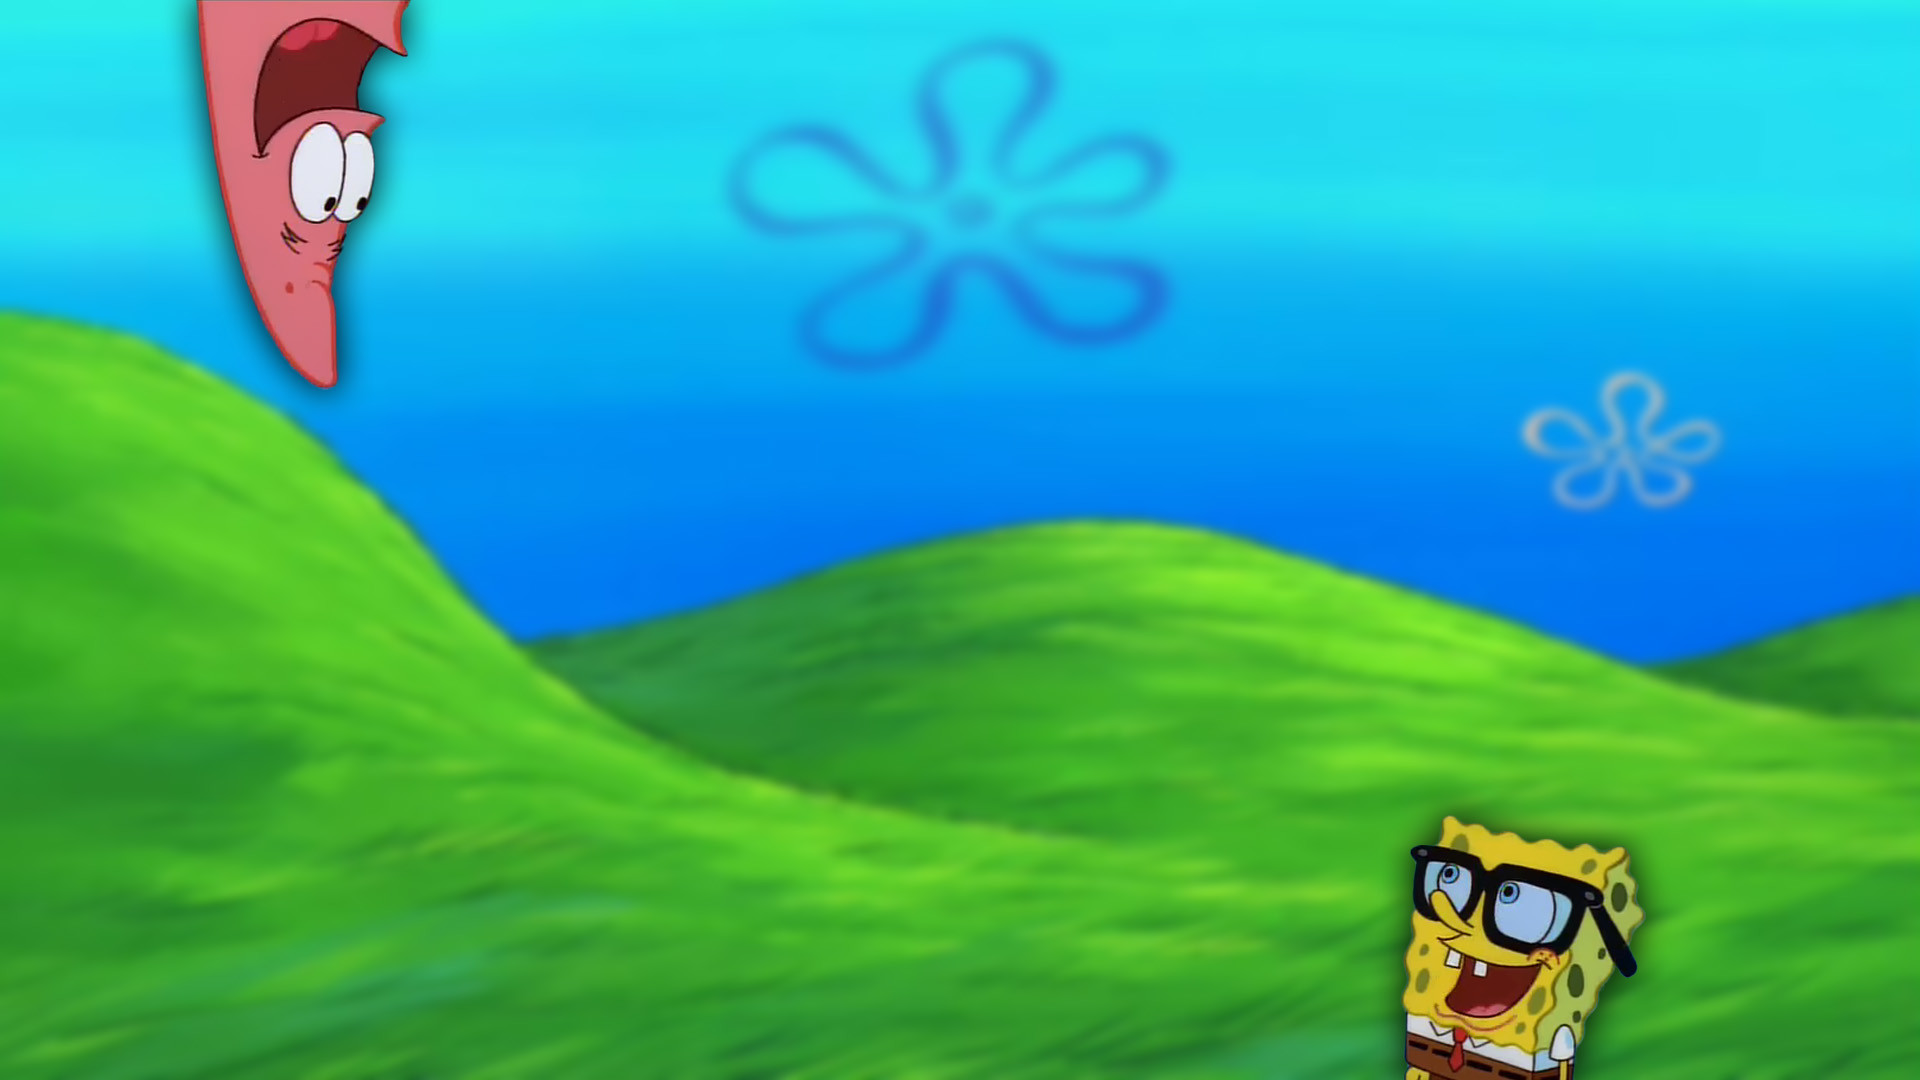 Spongebob Desktop Backgrounds free download | PixelsTalk.Net